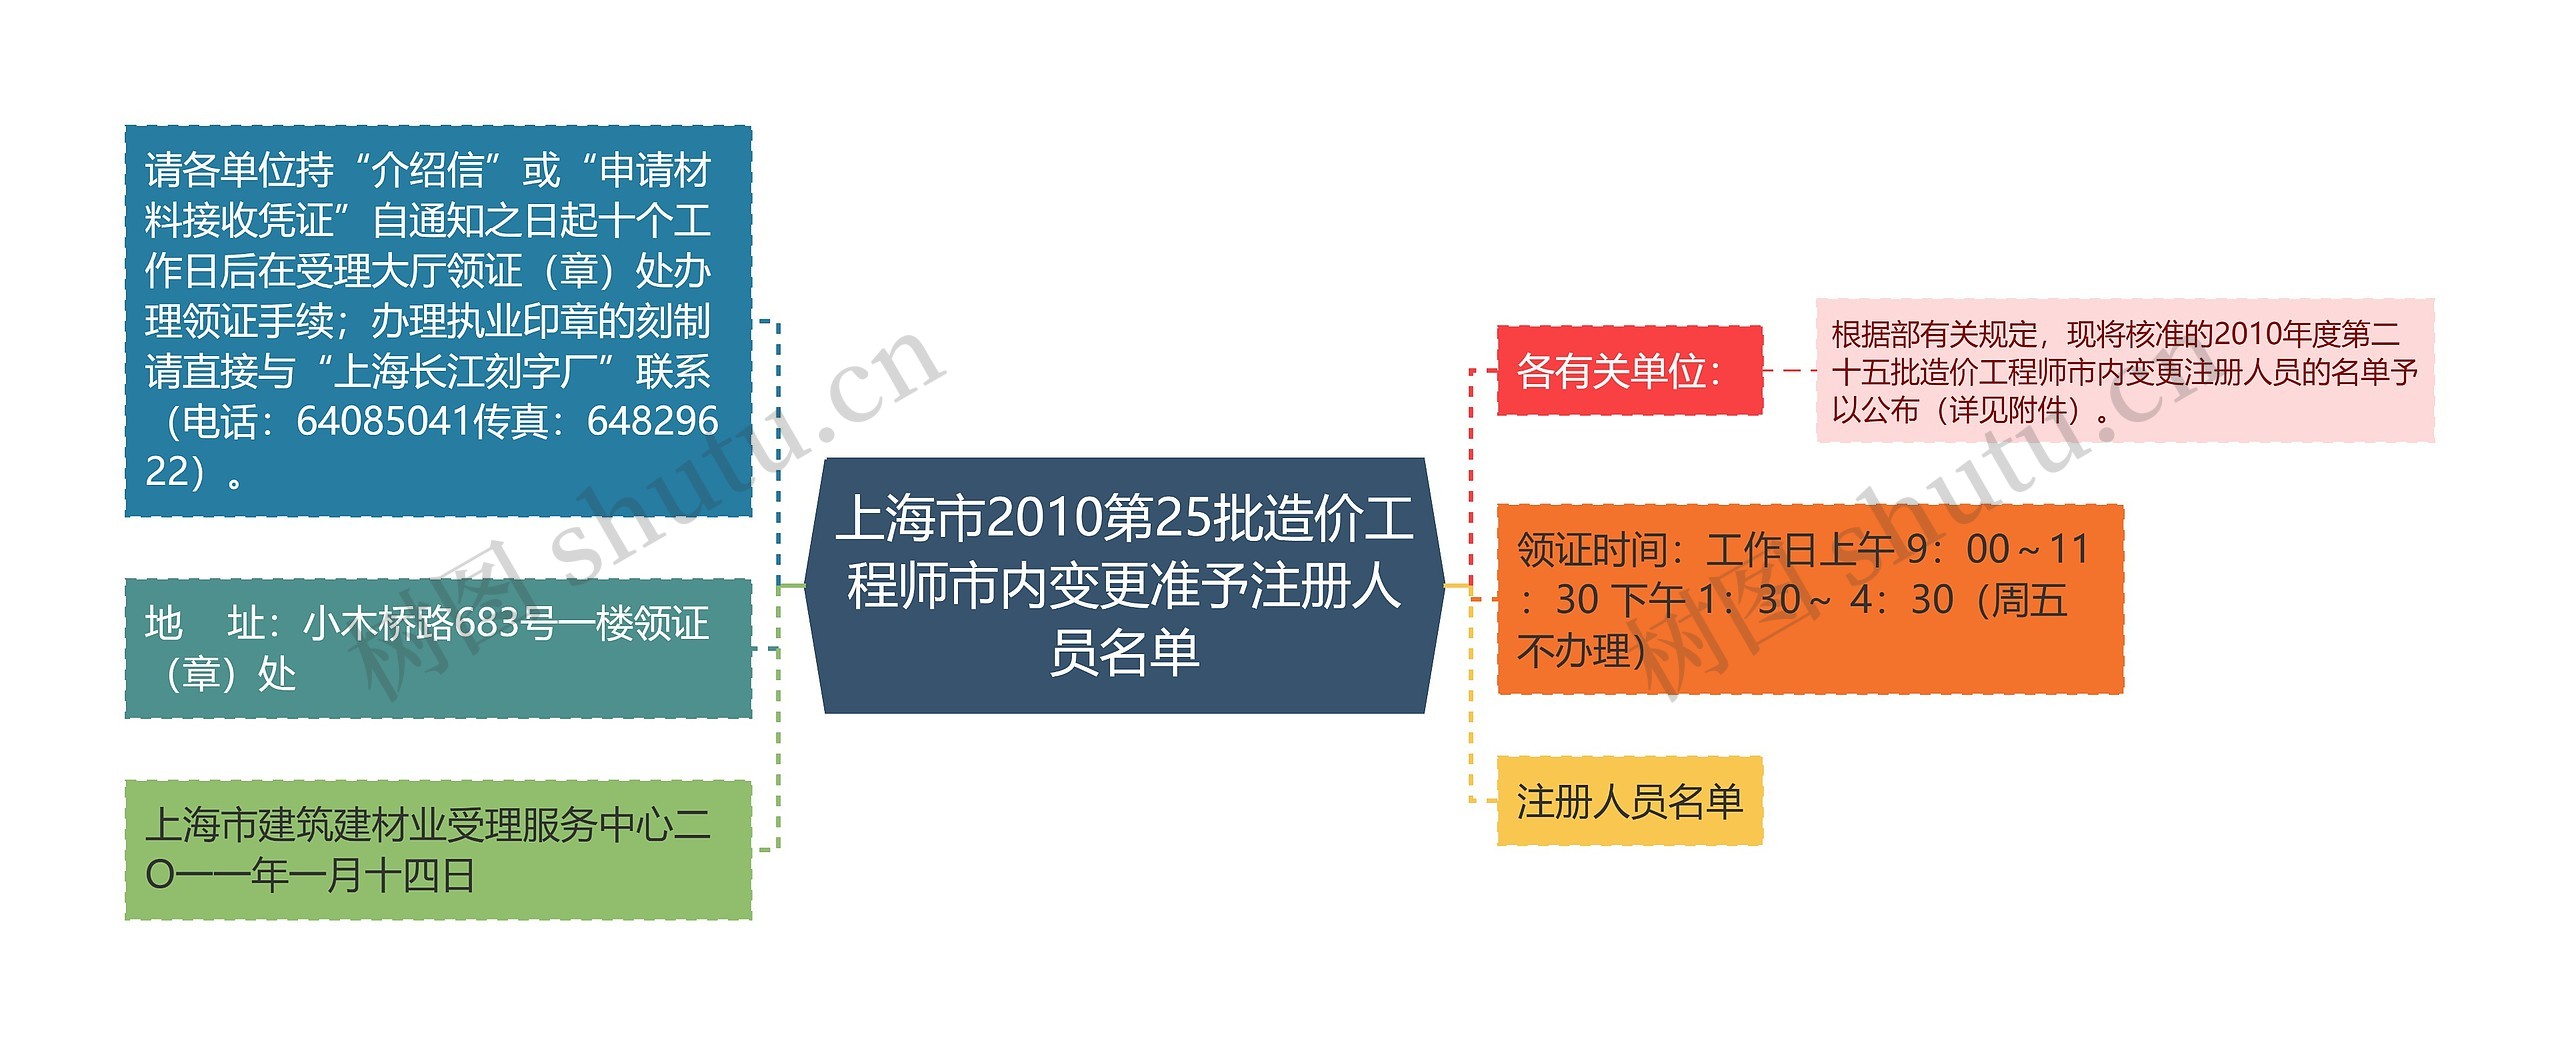 上海市2010第25批造价工程师市内变更准予注册人员名单思维导图